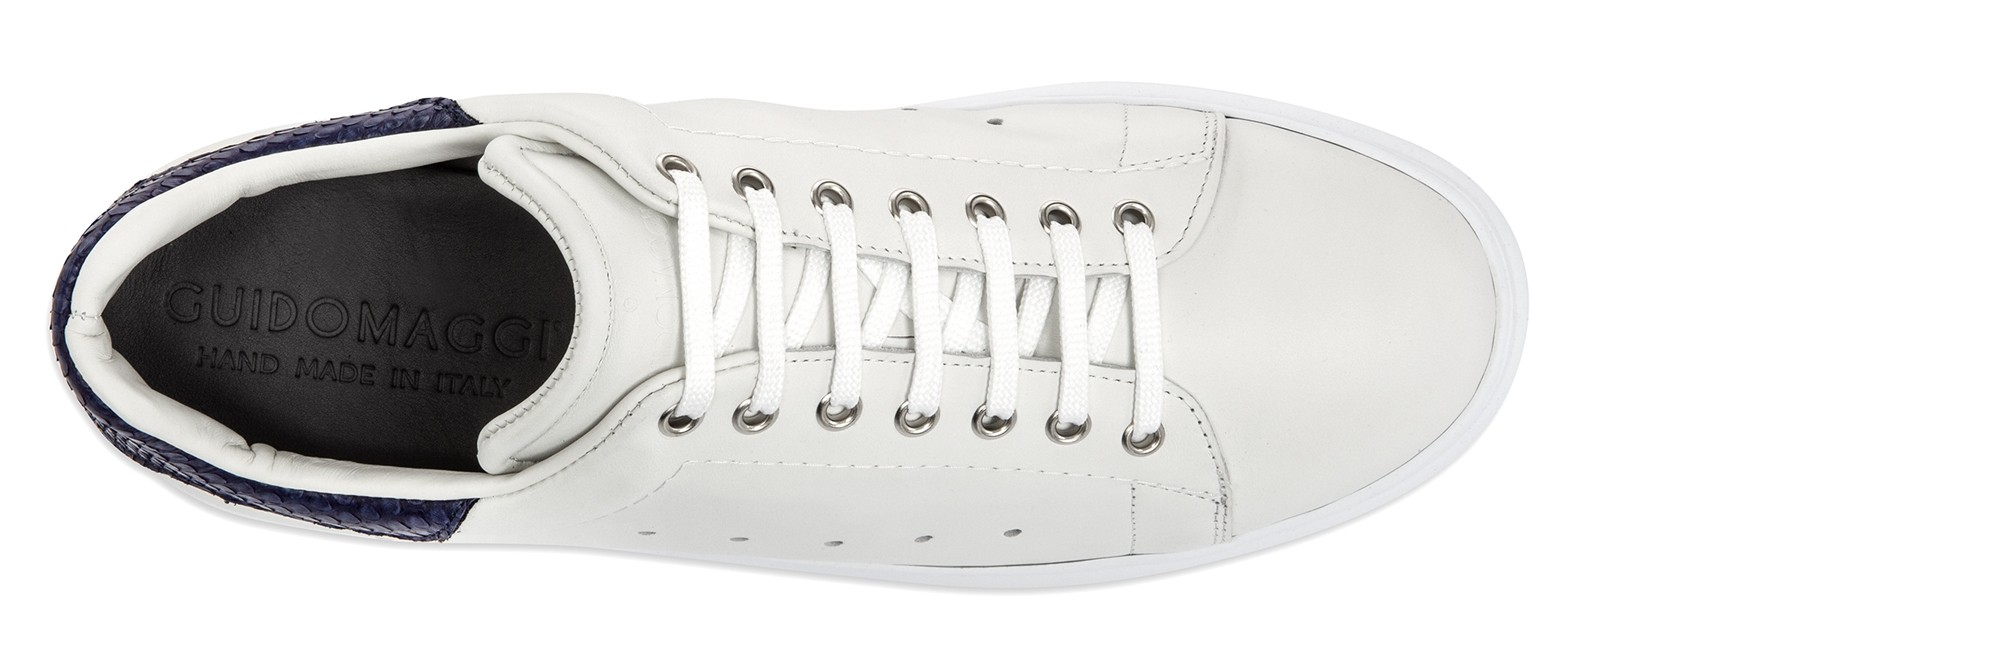 Sneakers con rialzo interno di 6 cm – Malatigeniali